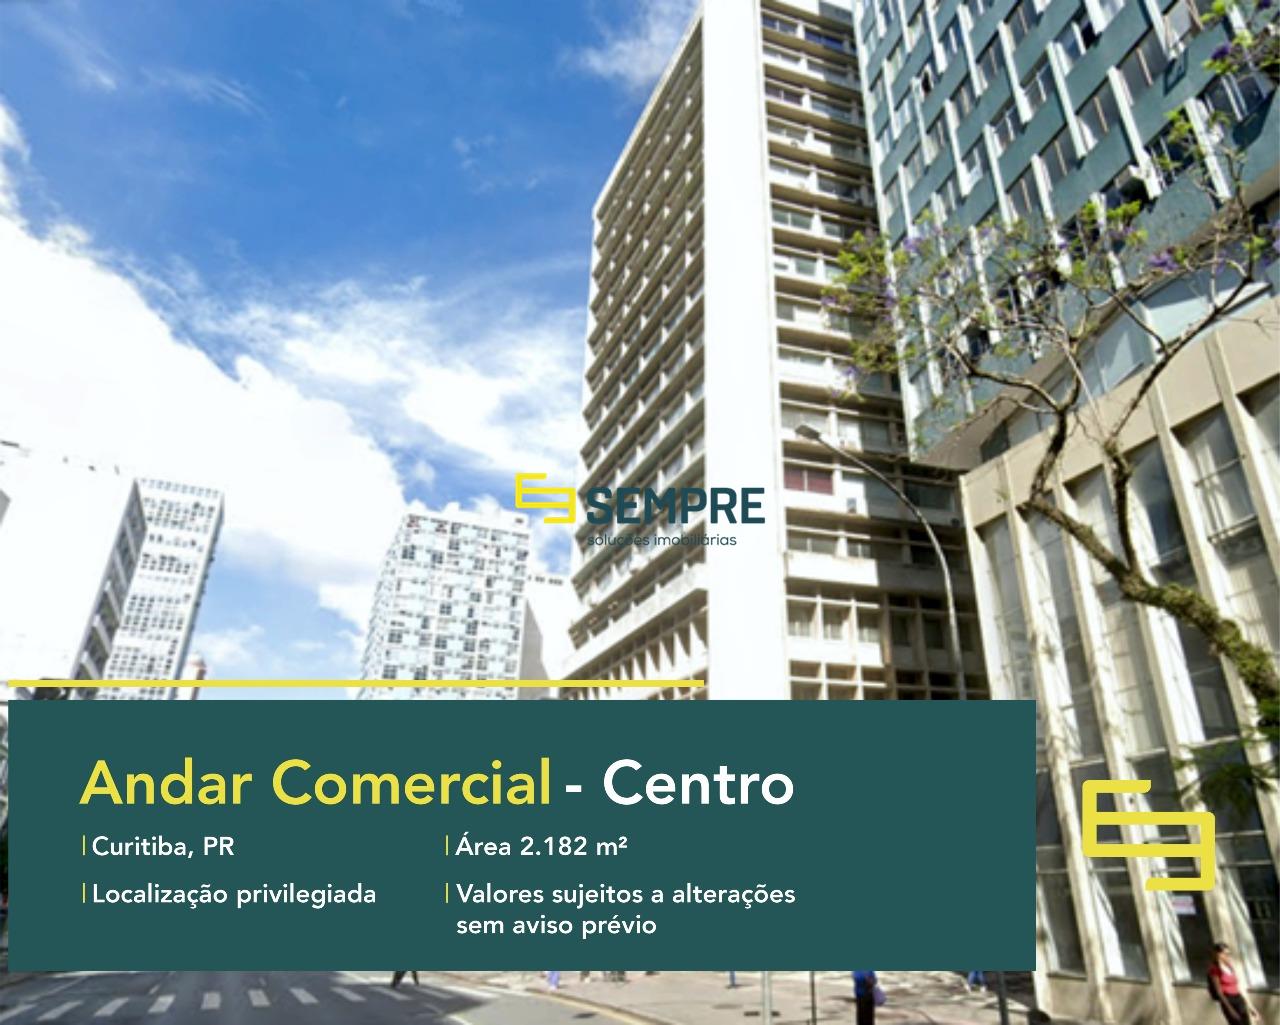 Andar comercial no Centro de Curitiba - Paraná, excelente localização. O estabelecimento comercial conta com área de 2.182 m².